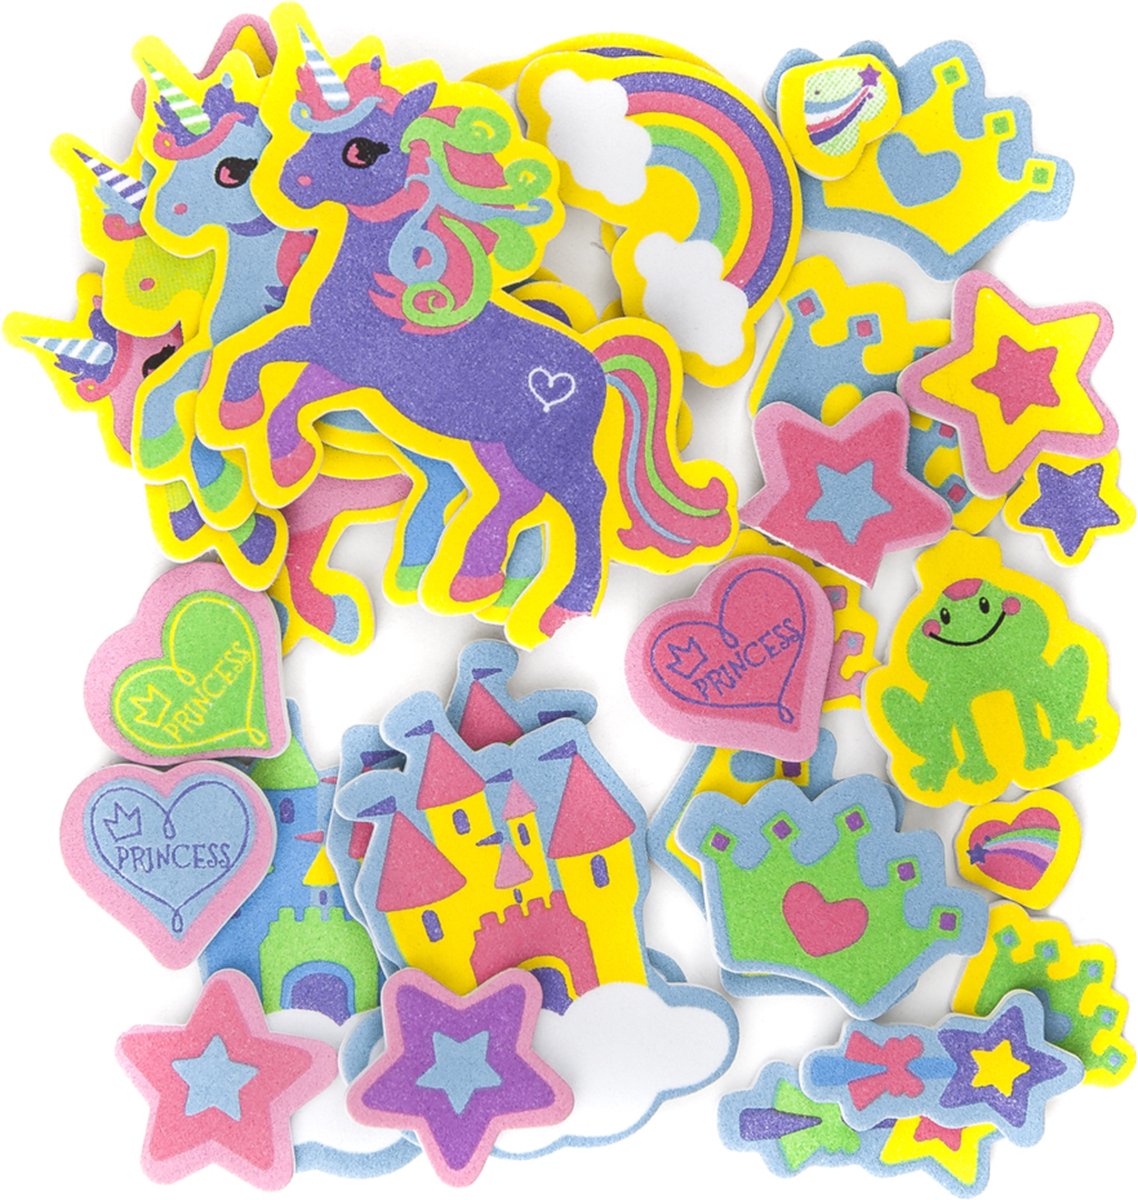 50 Foam Stickers Unicorns | Knutselstickers Eenhoorns | Knutselen Meisjes, Knutselstickers, Knutselen Kinderen | Unicorn Foamstickers | Kleuter Stickers | Kinderstickers | Eenhoorn Stickers voor Kinderen | Hobbystickers